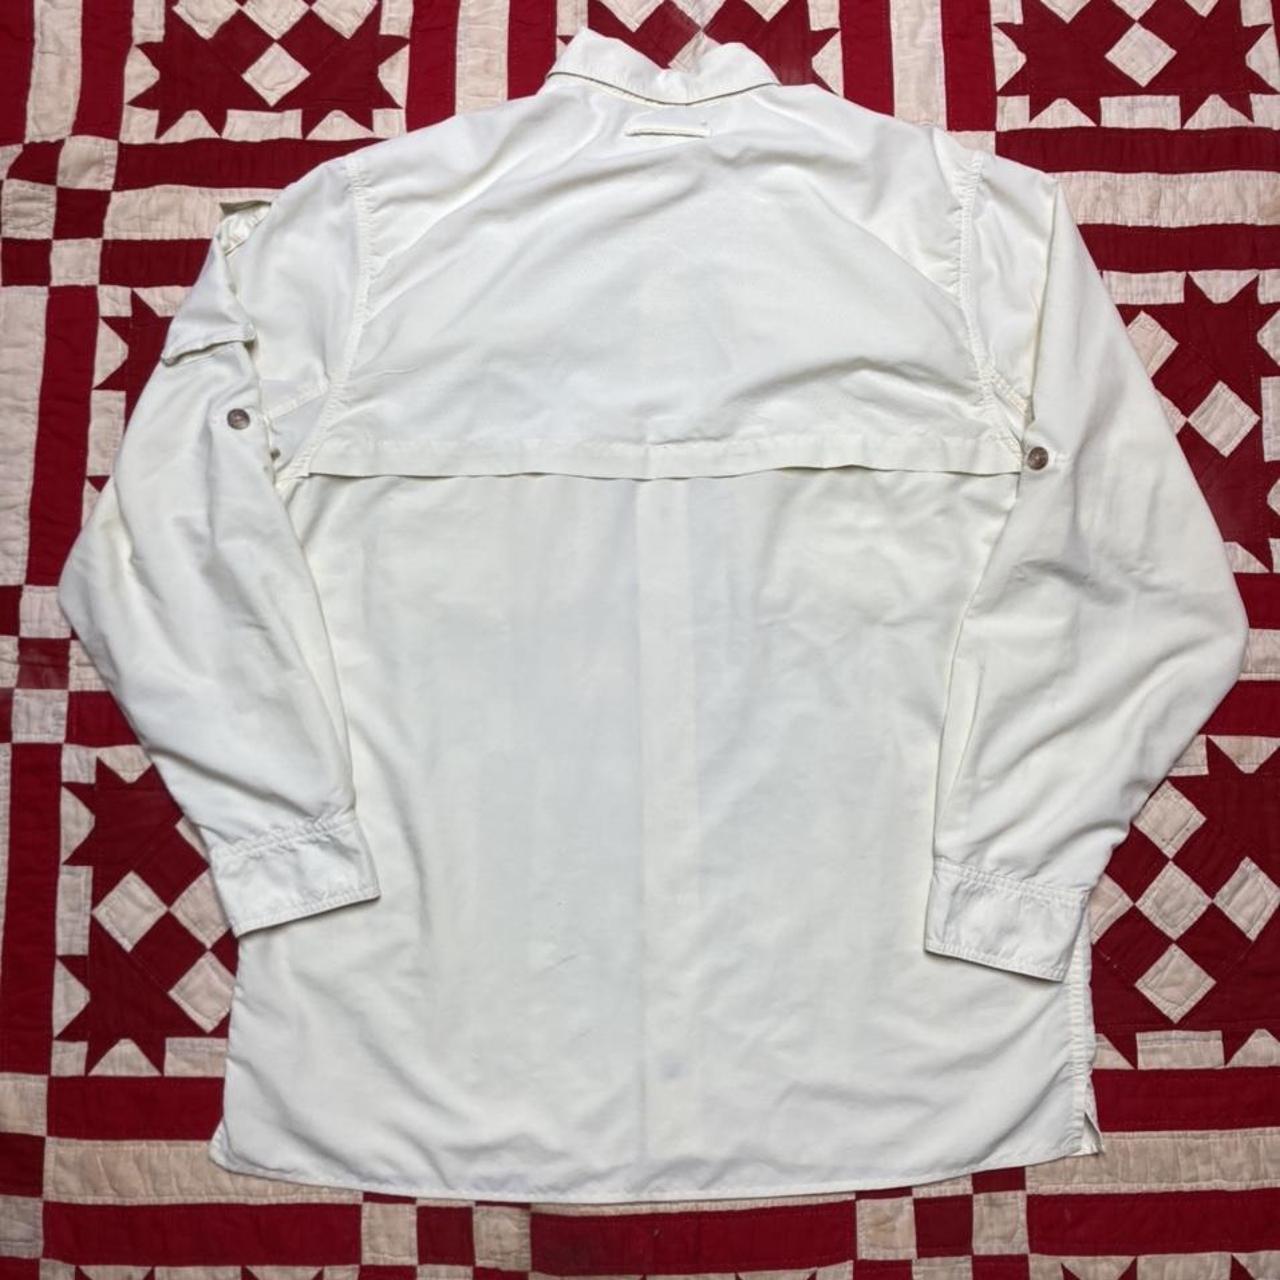 ExOfficio Men's Cream and White Shirt (6)